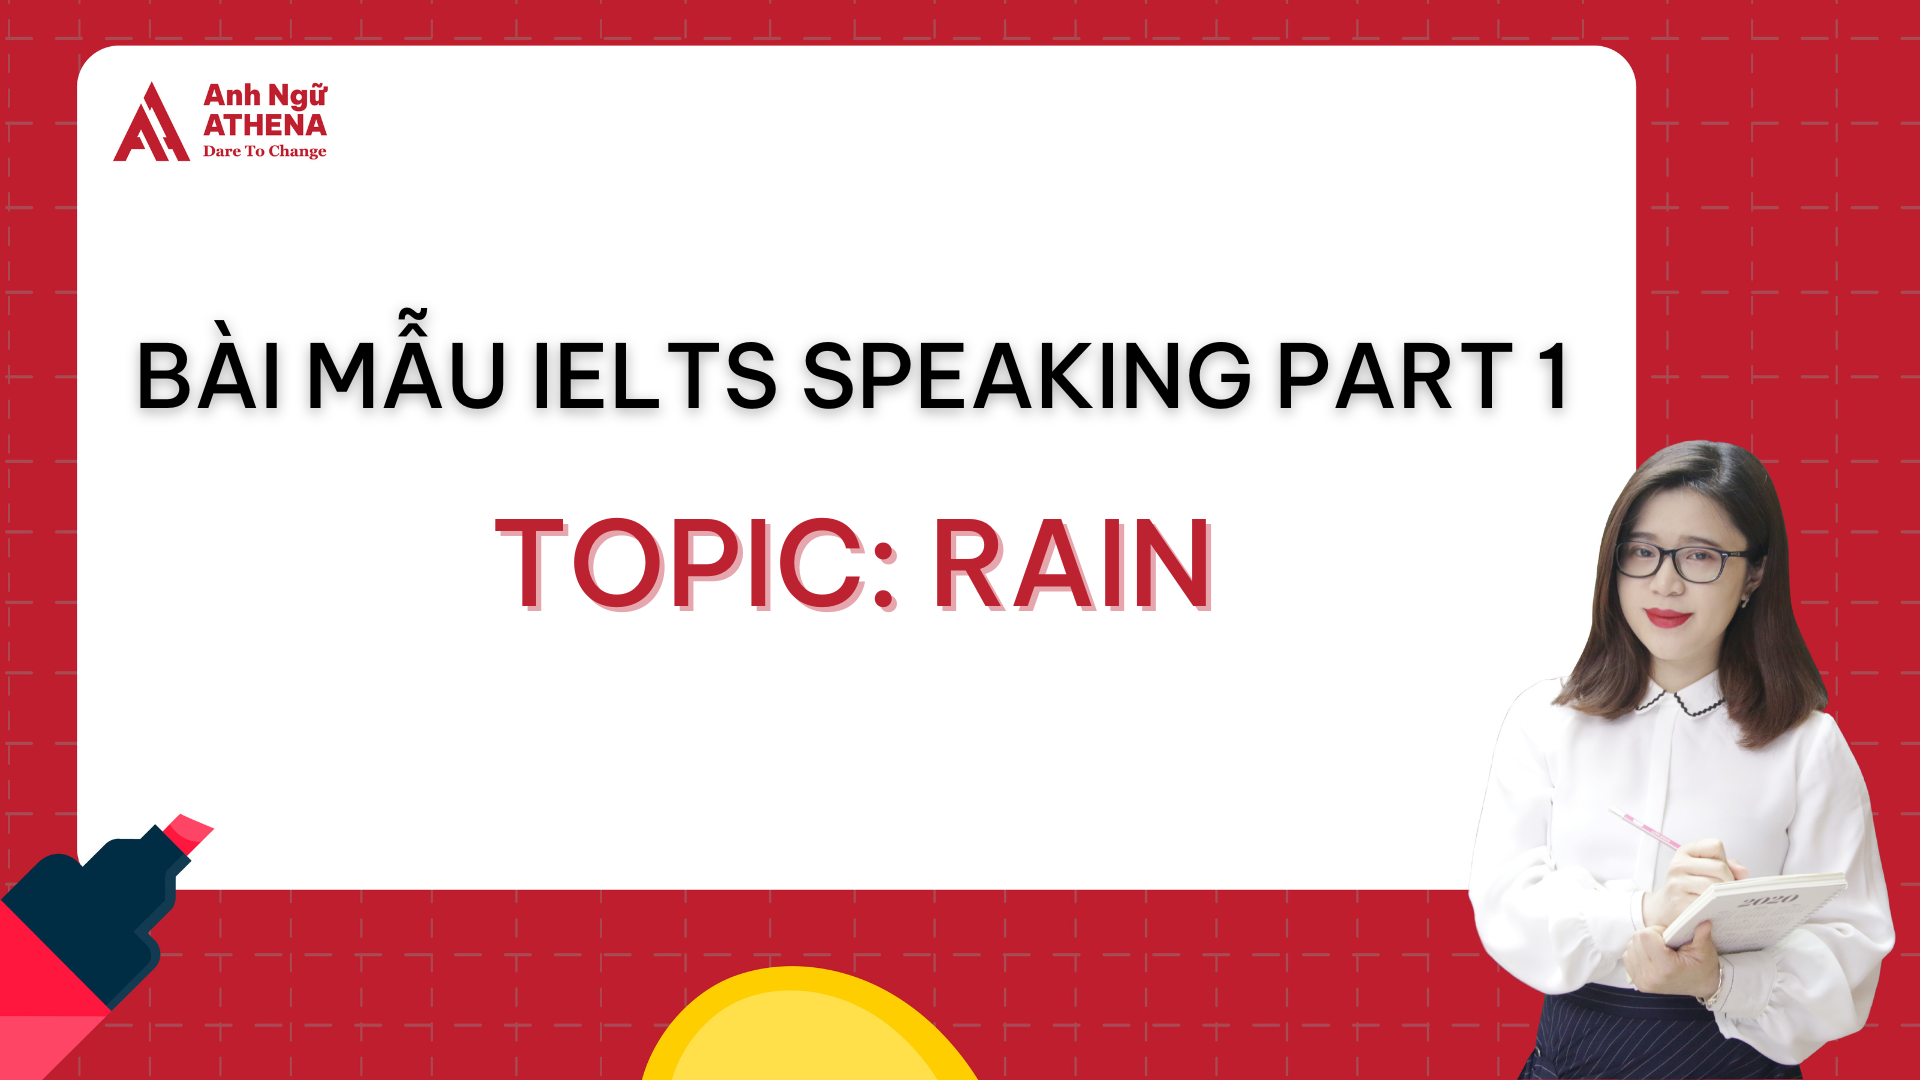 Bài mẫu IELTS Speaking Part 1 - Topic: Rain